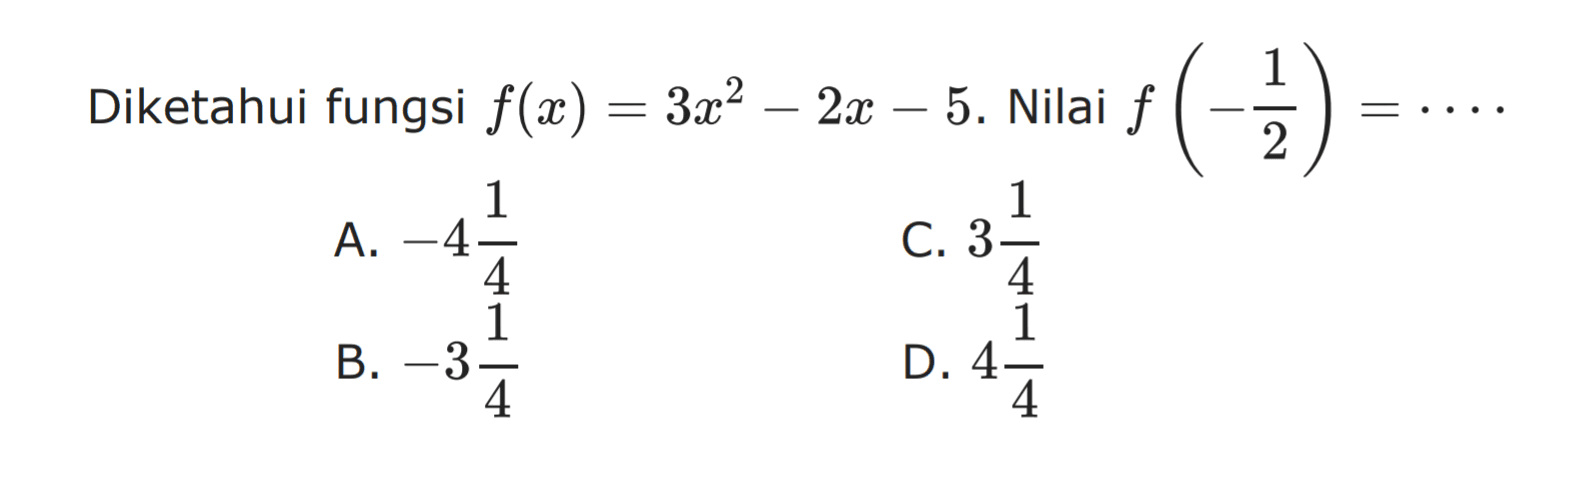 Diketahui fungsi f(x) = 3x^2 - 2x - 5. Nilai f(1/2) = ....